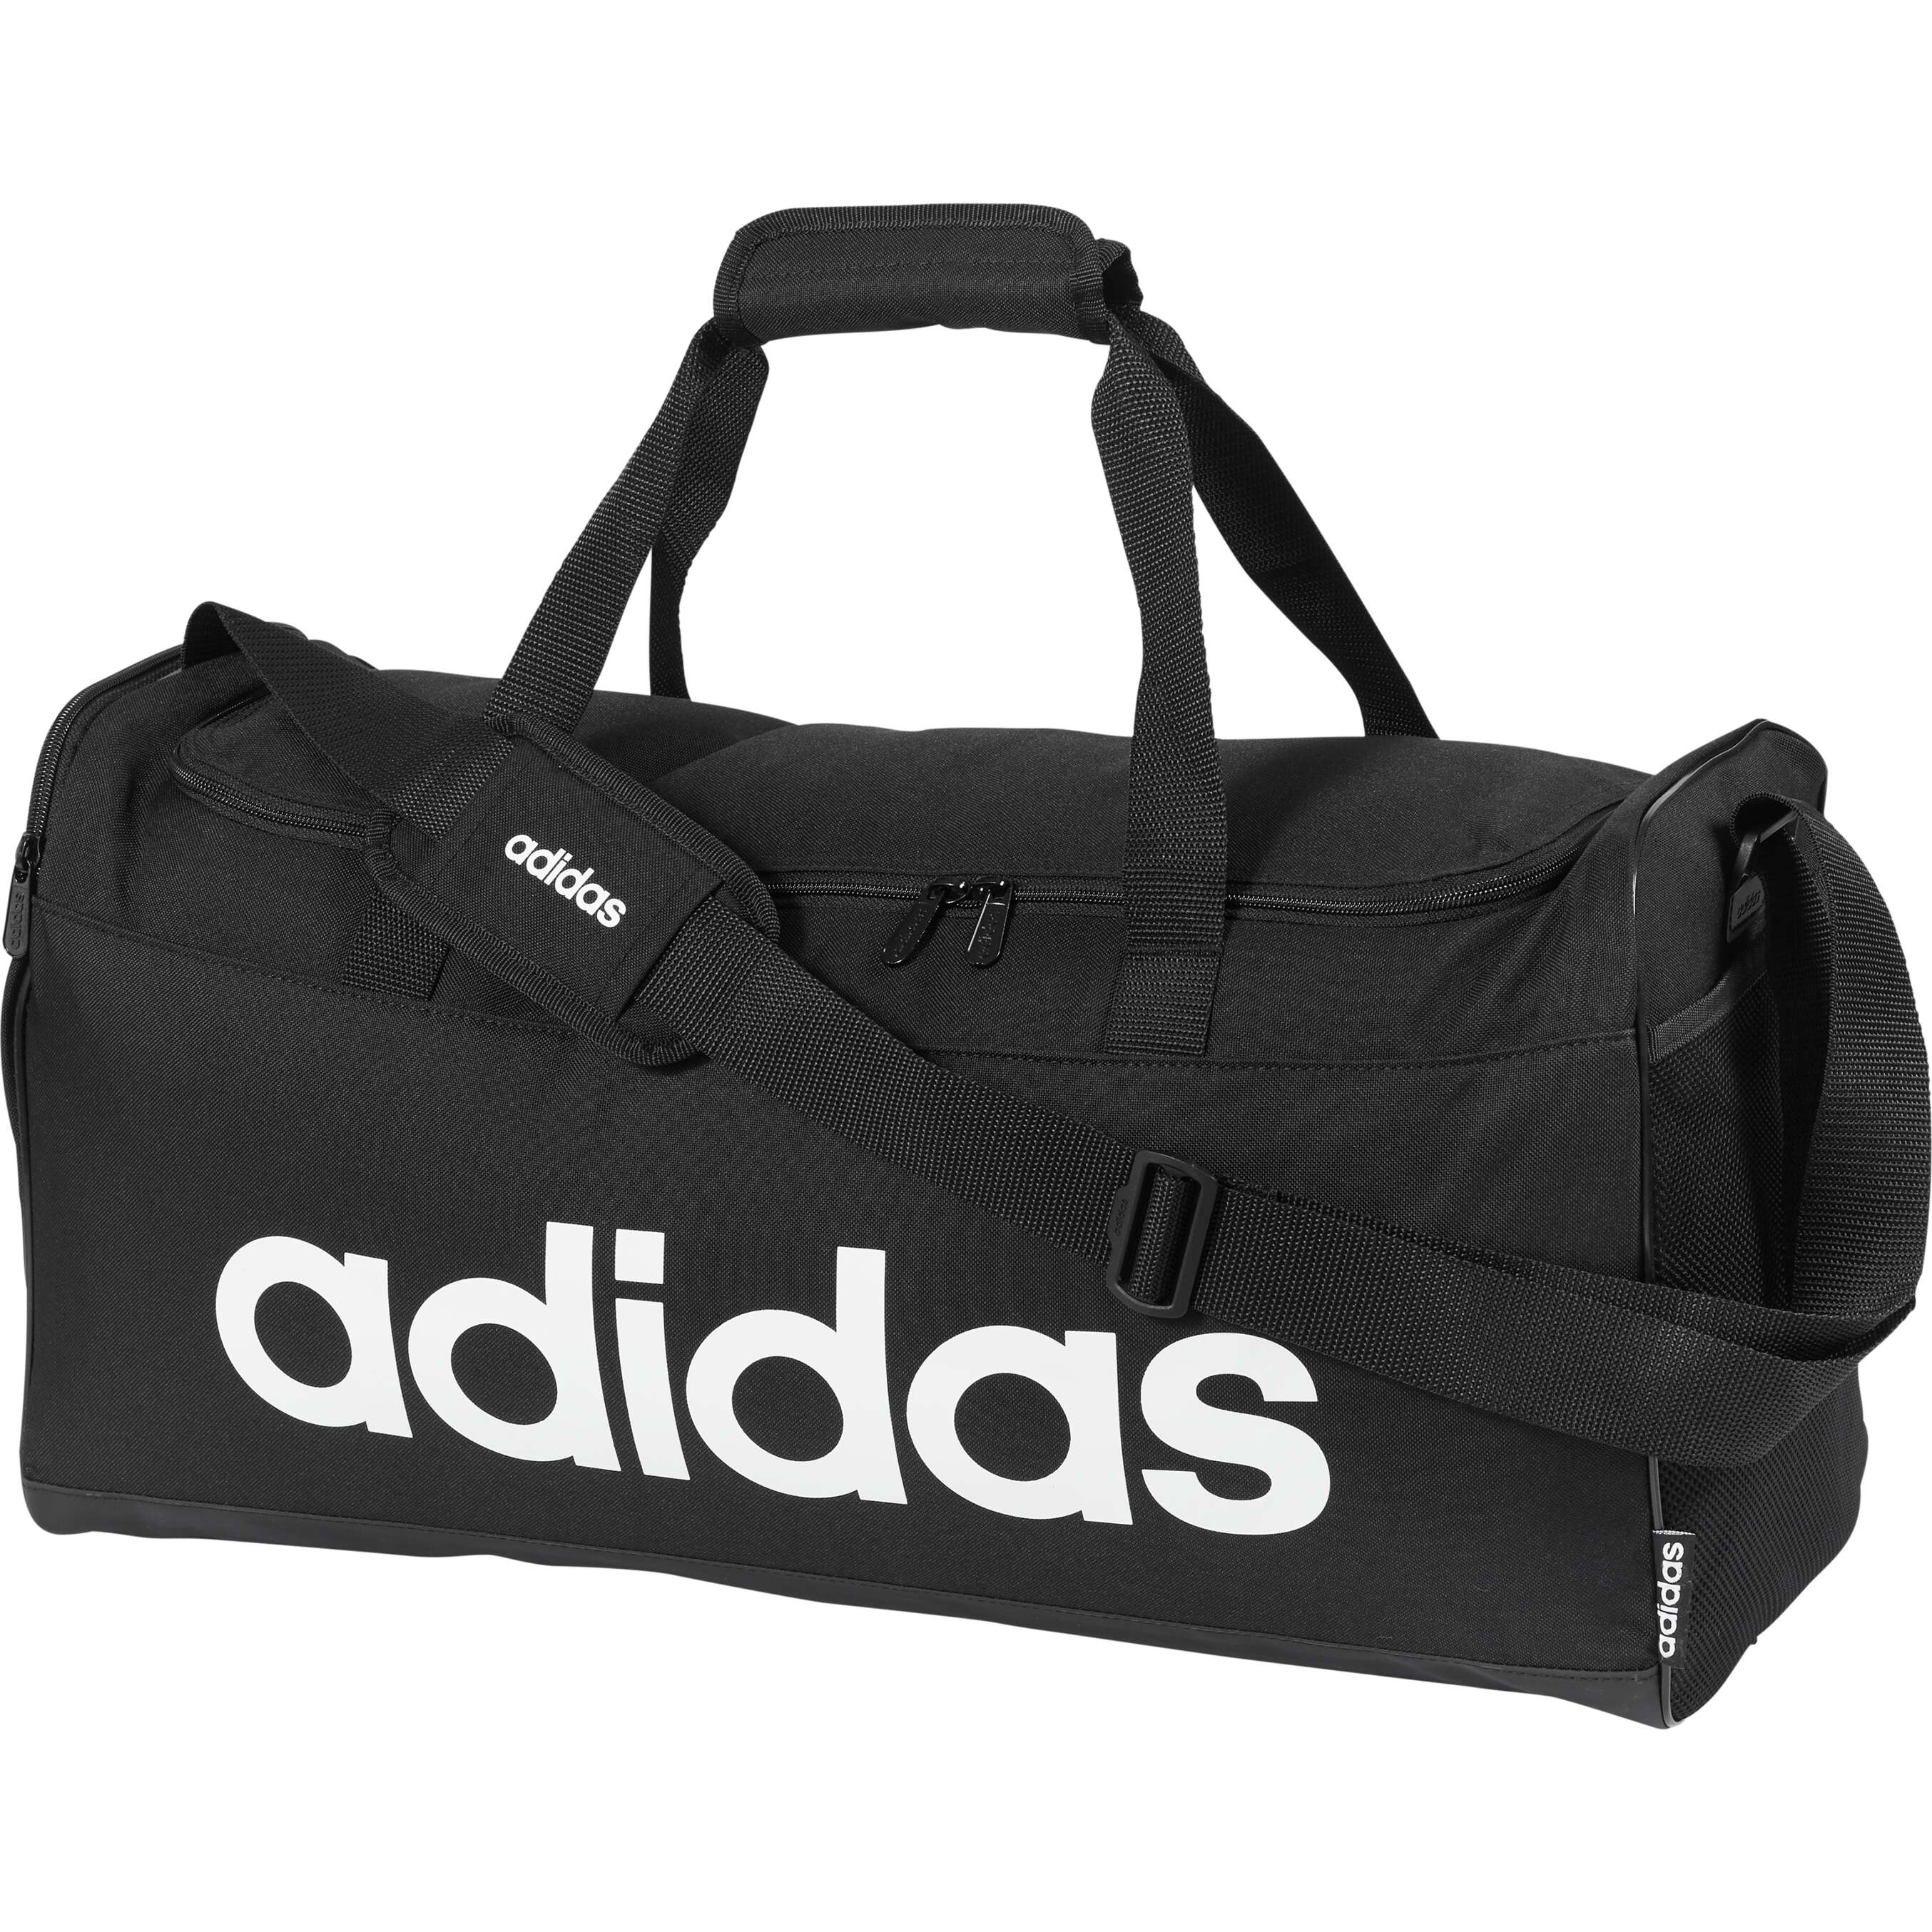 Zobrazit nabídku ADIDAS Sportovní taška